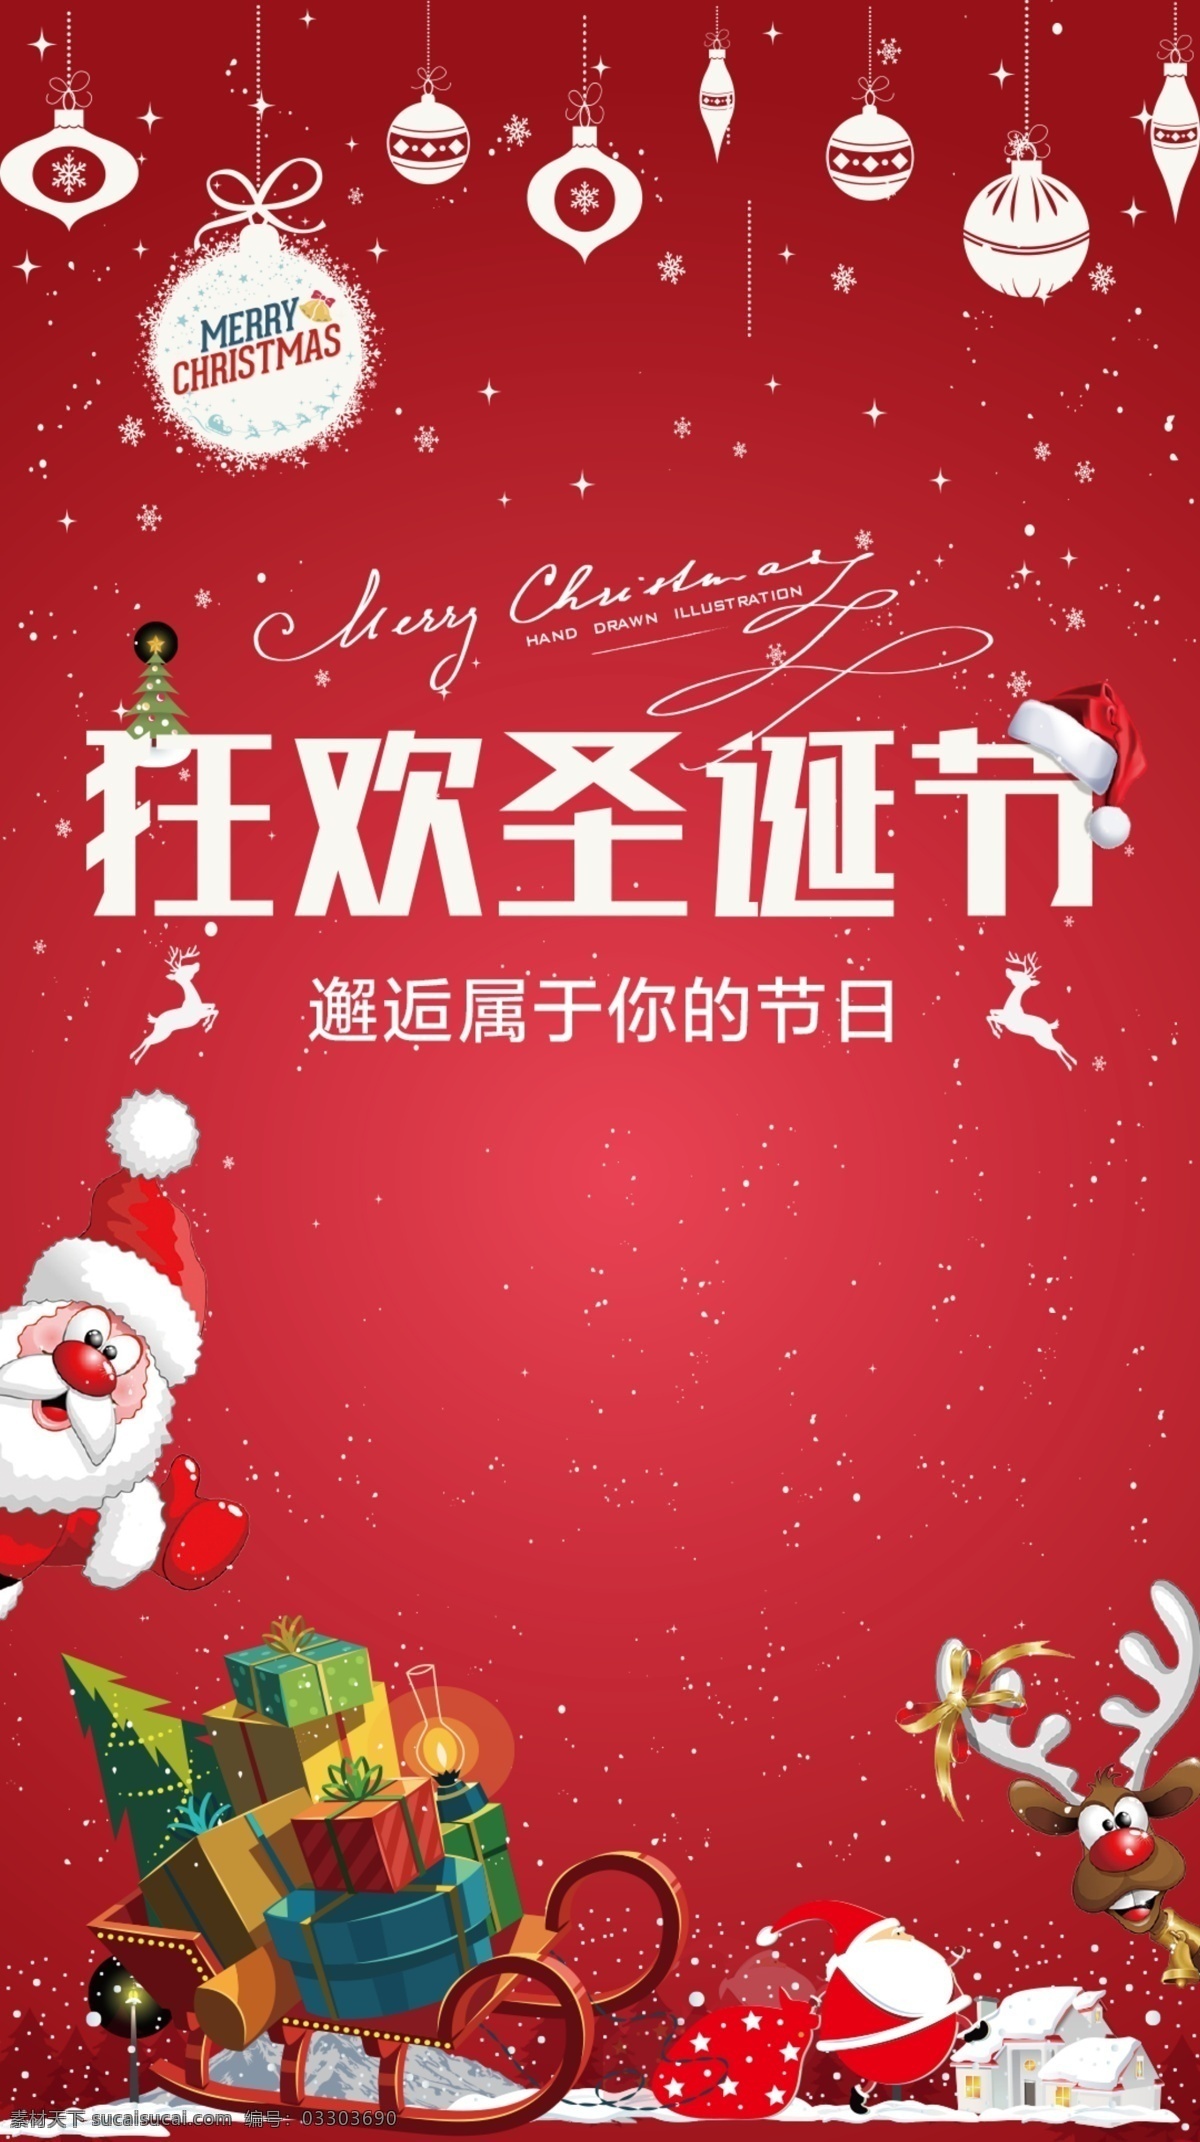 喜庆 圣诞 图文 宣传海报 圣诞节 圣诞老人 雪花 礼品 鹿 雪车